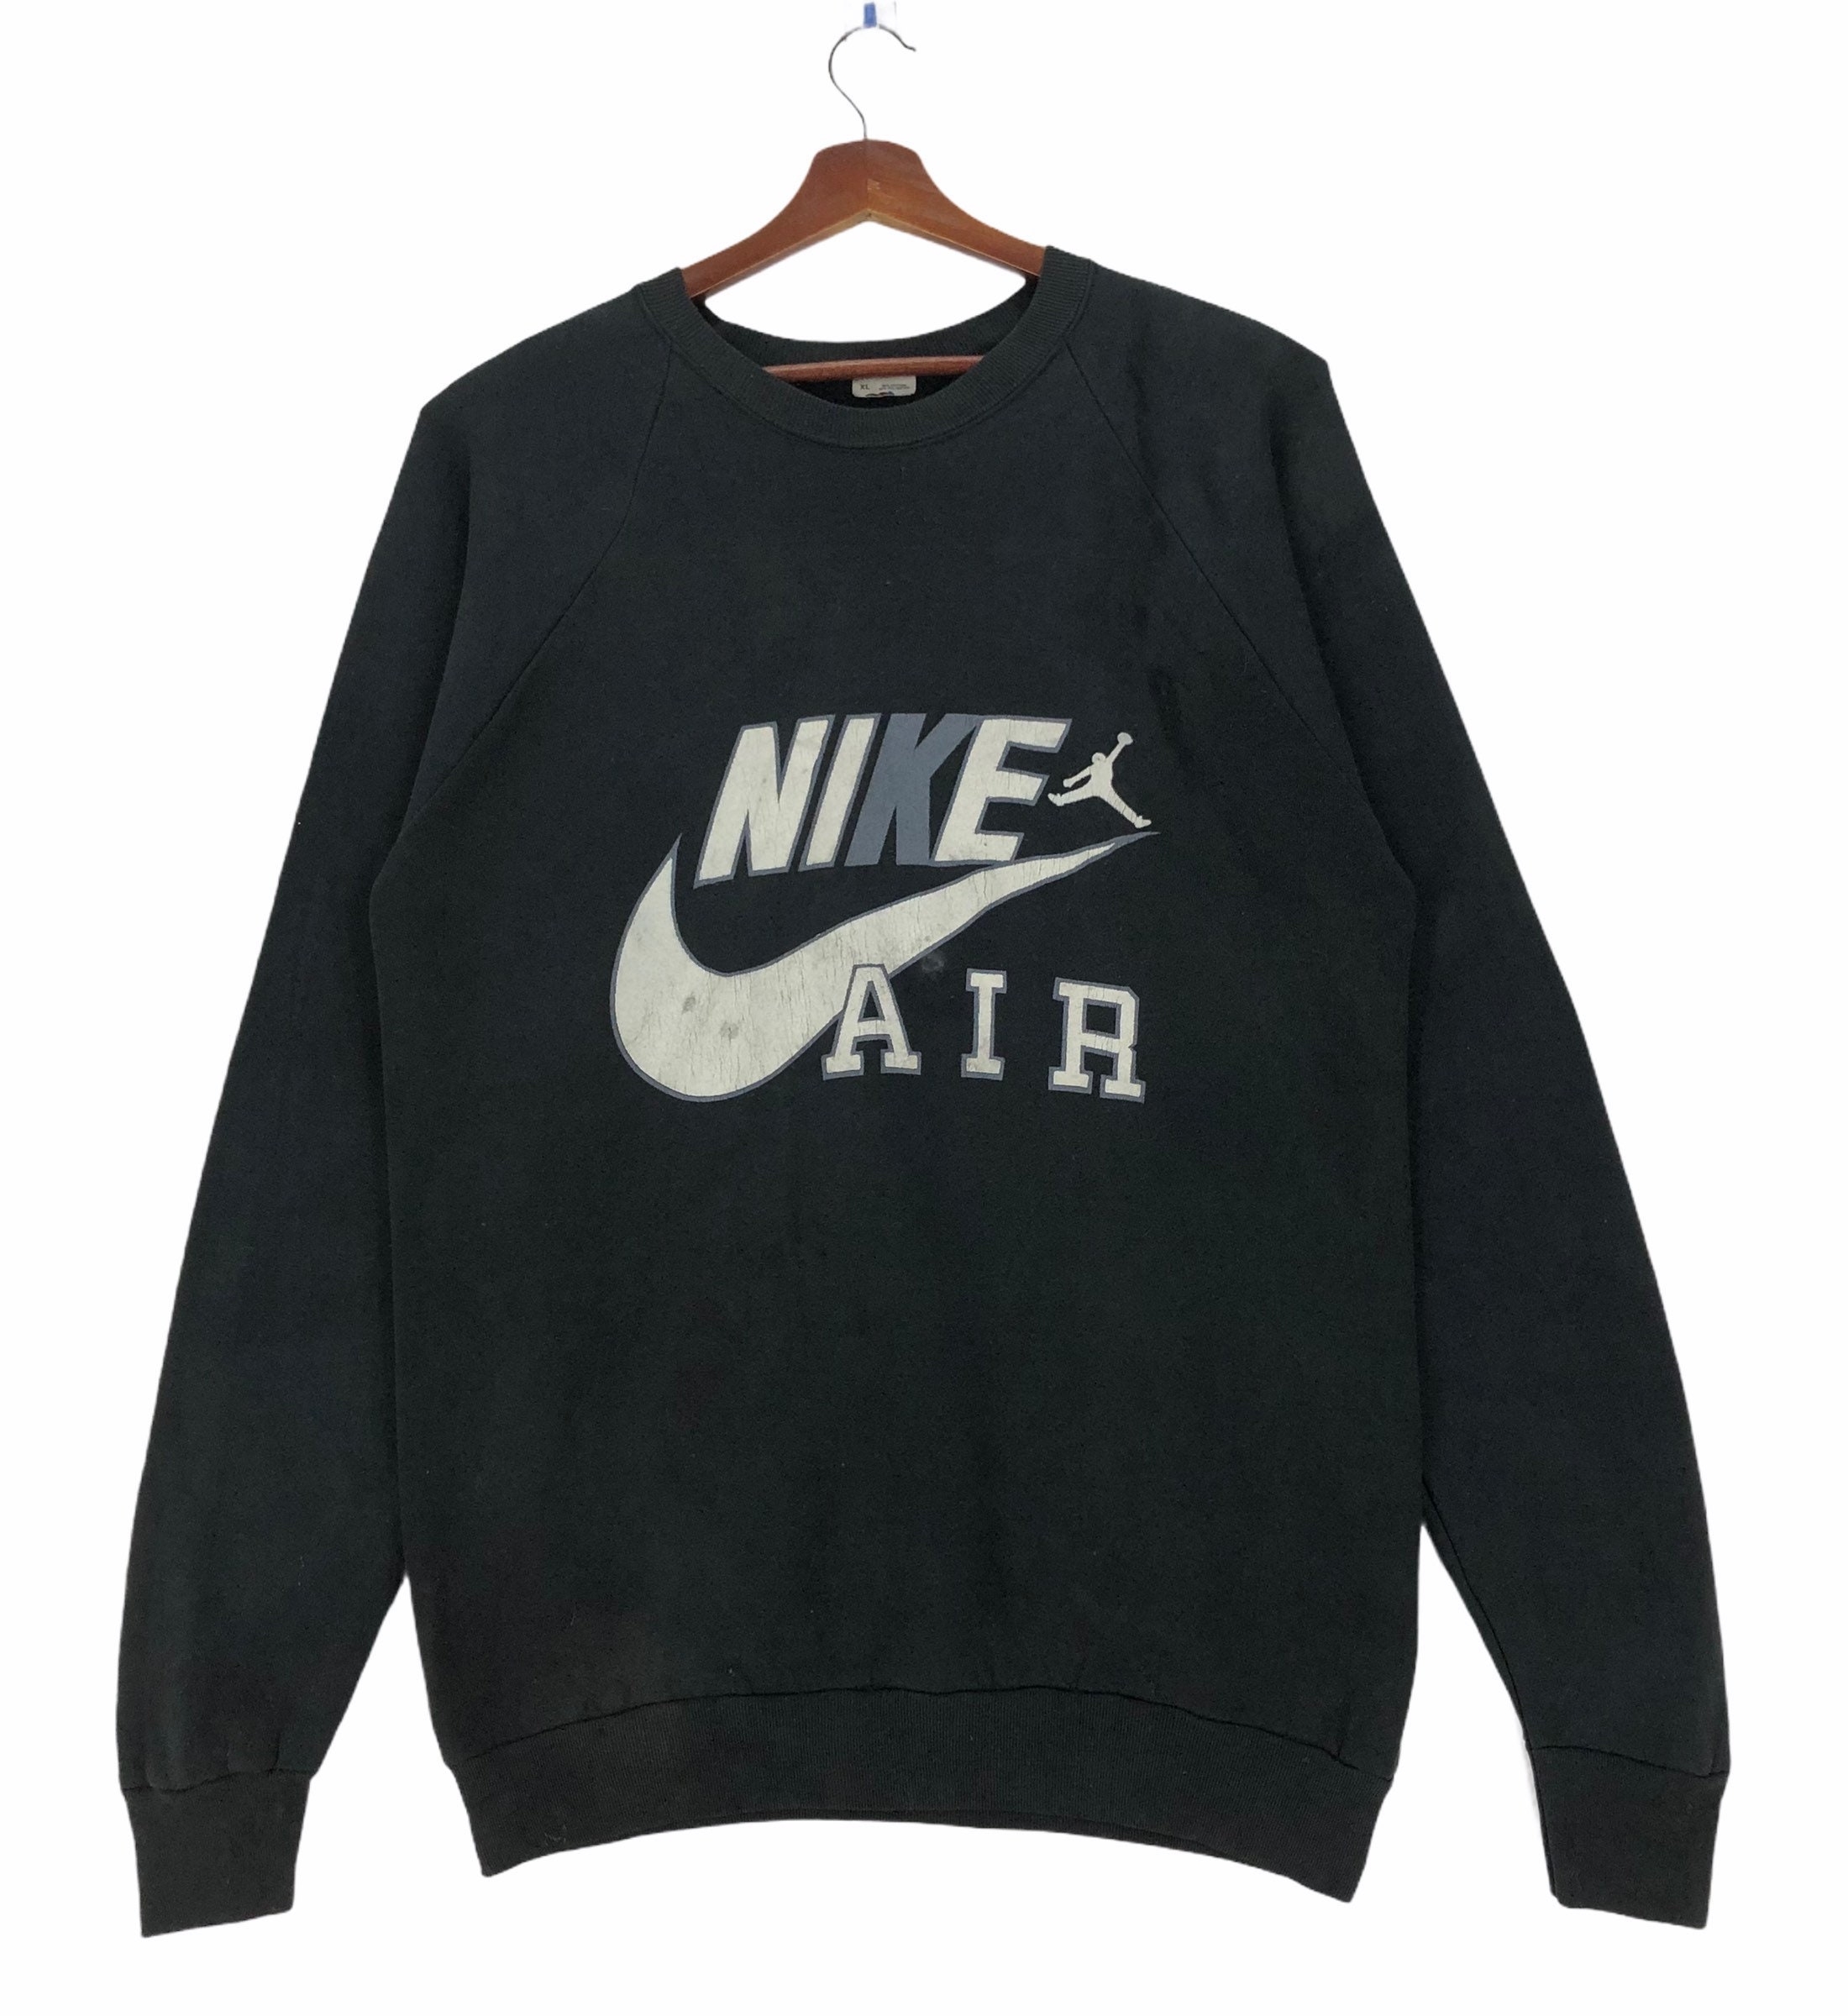 Vintage 80s Nike Air Sweatshirt Crewneck Spellout Nike Air - Etsy